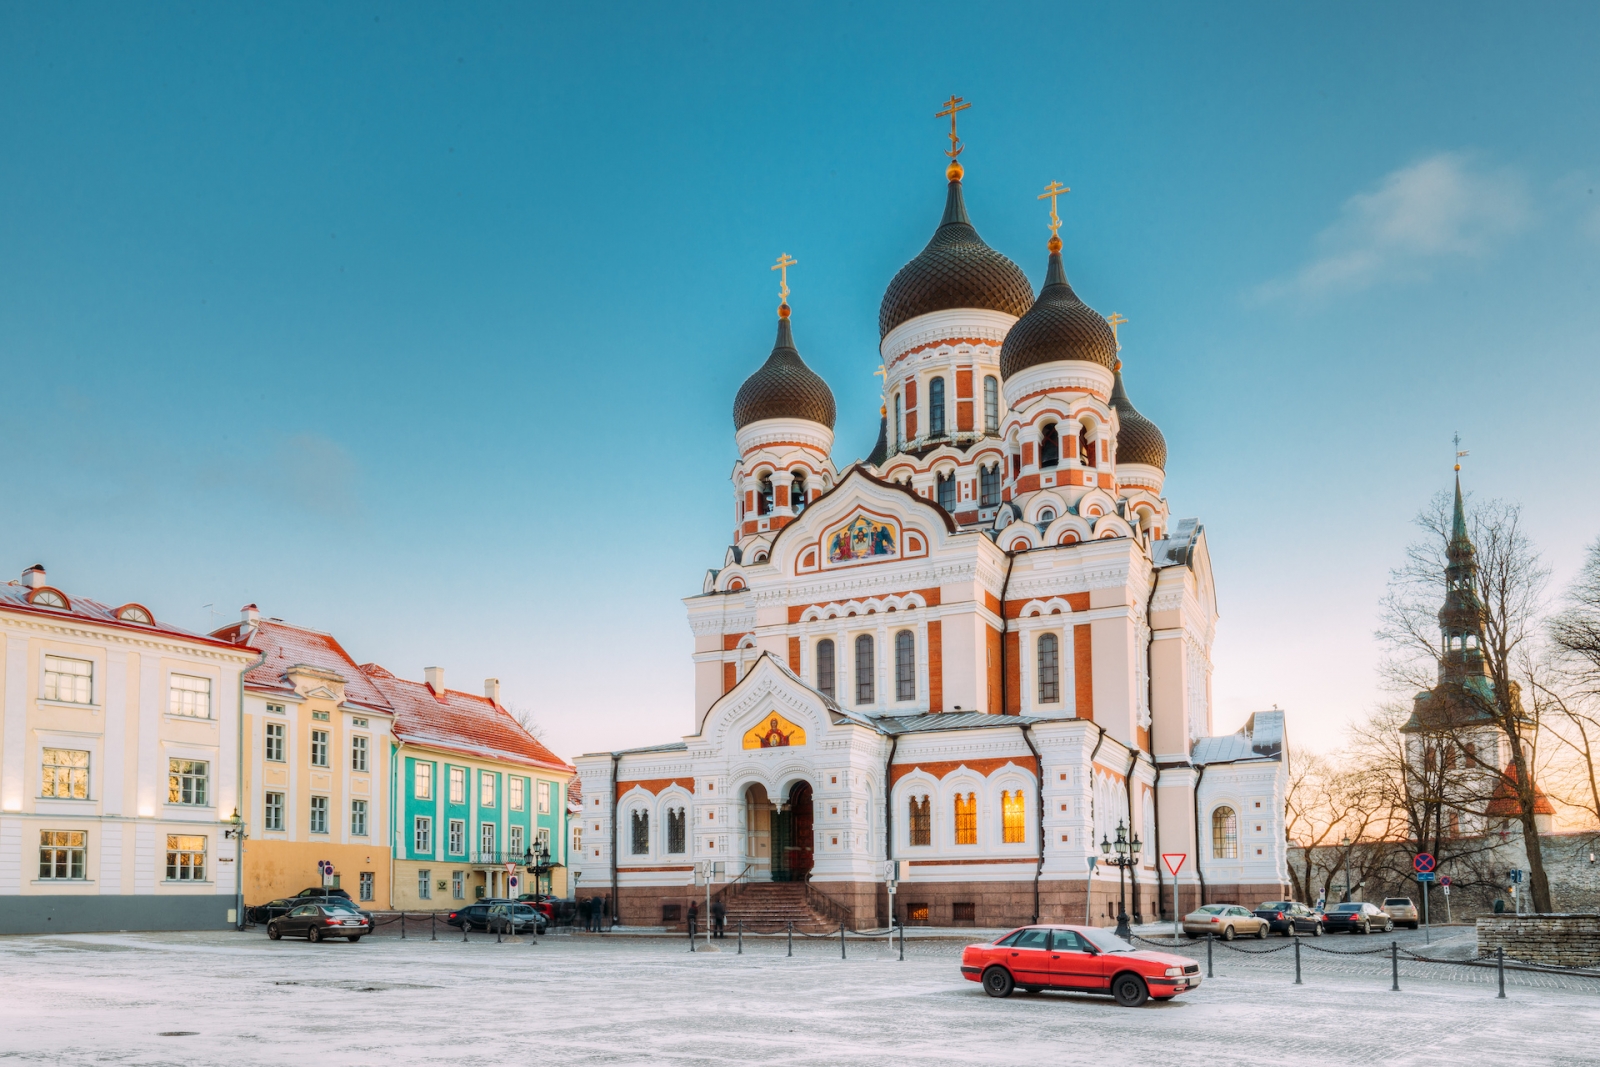 Tallinn, Estland.  Morgenansicht der Alexander-Newski-Kathedrale.  Die berühmte orthodoxe Kathedrale ist Tallinns größte und prächtigste orthodoxe Kuppelkathedrale.